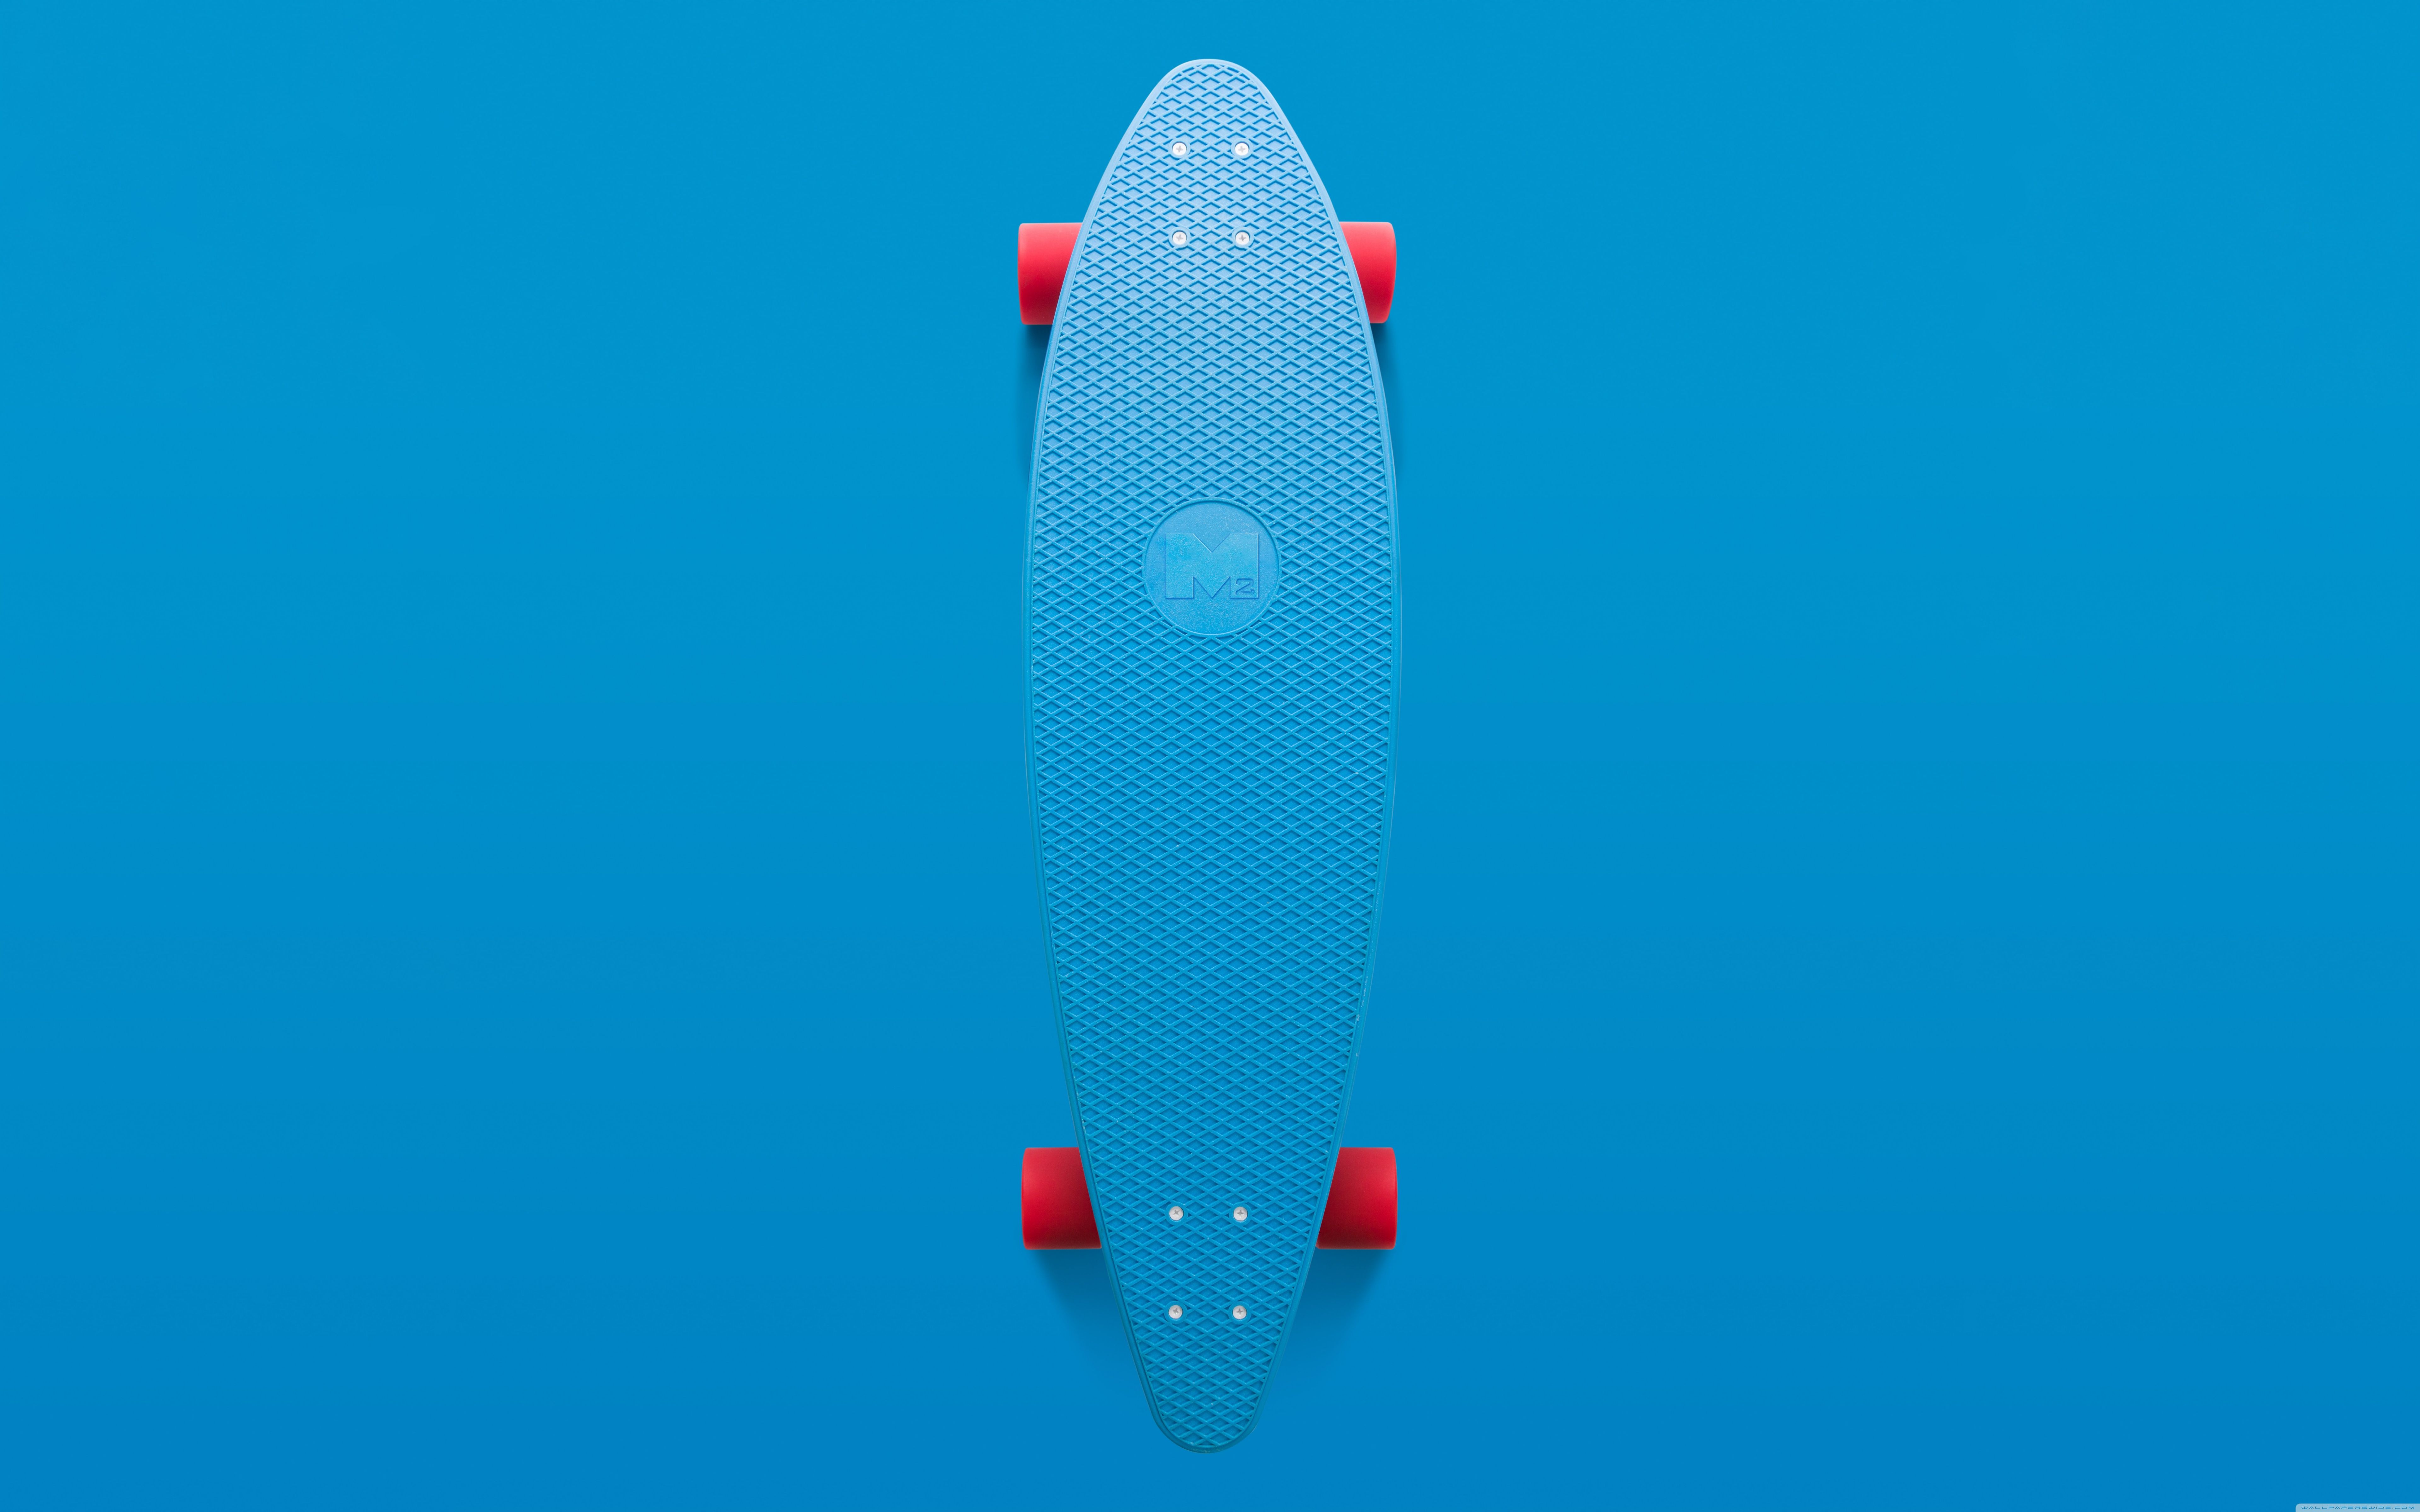 Skateboard Aesthetic Ultra HD Desktop Background Wallpaper for 4K